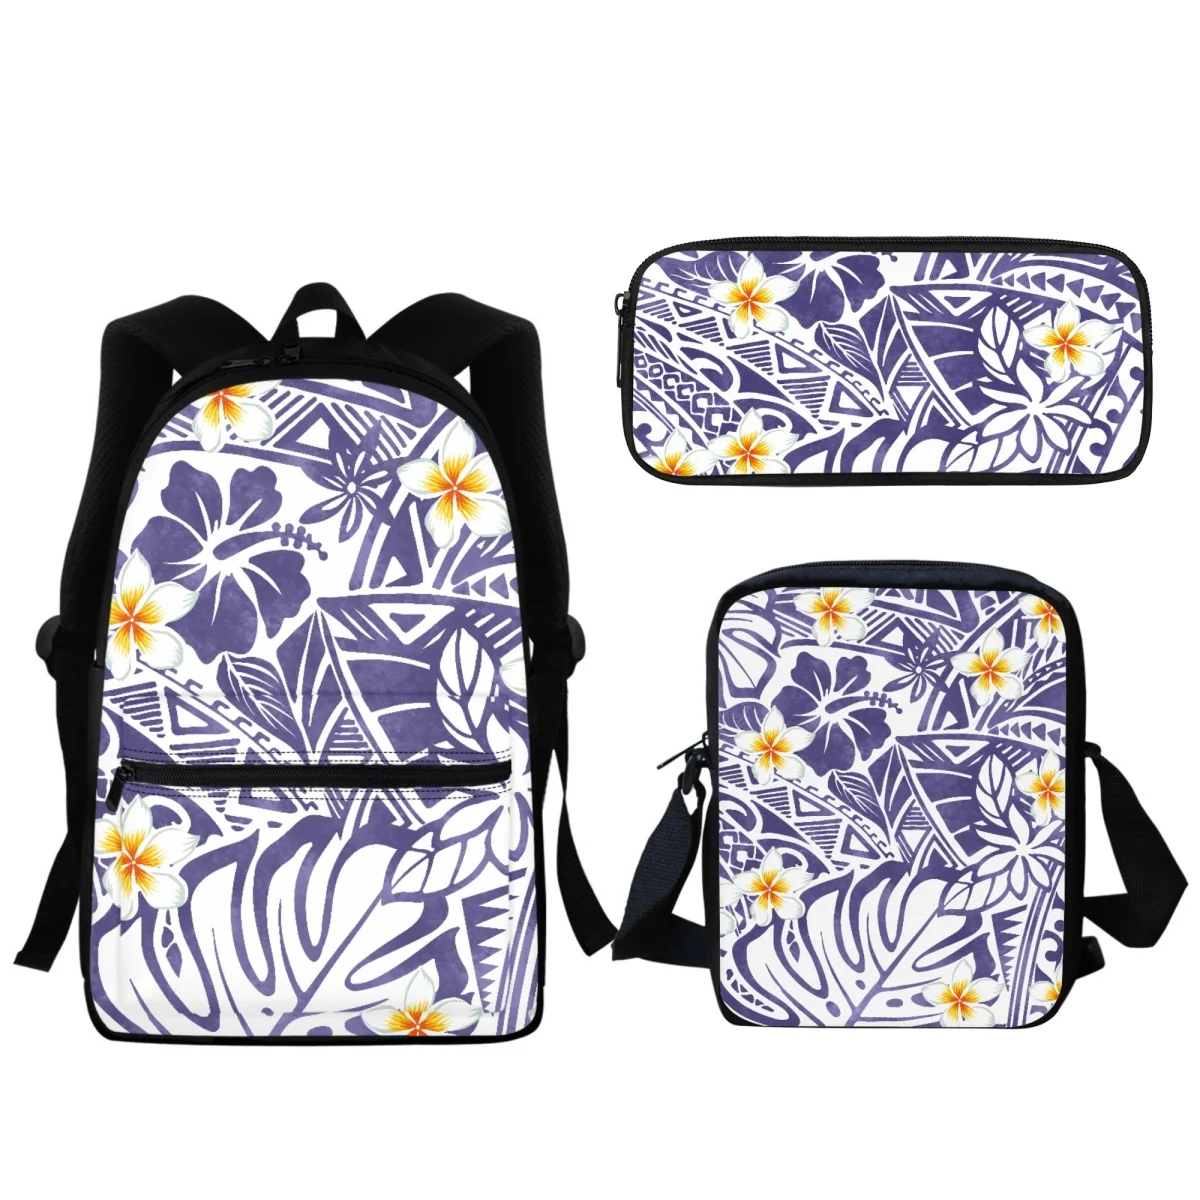 Retro Zipper Impresso Schoolbag para Crianças, Design Havaiano, Schoolbag Set, Student Book Bag, Pequeno Messenger Bag, Meninos e Meninas, Novo